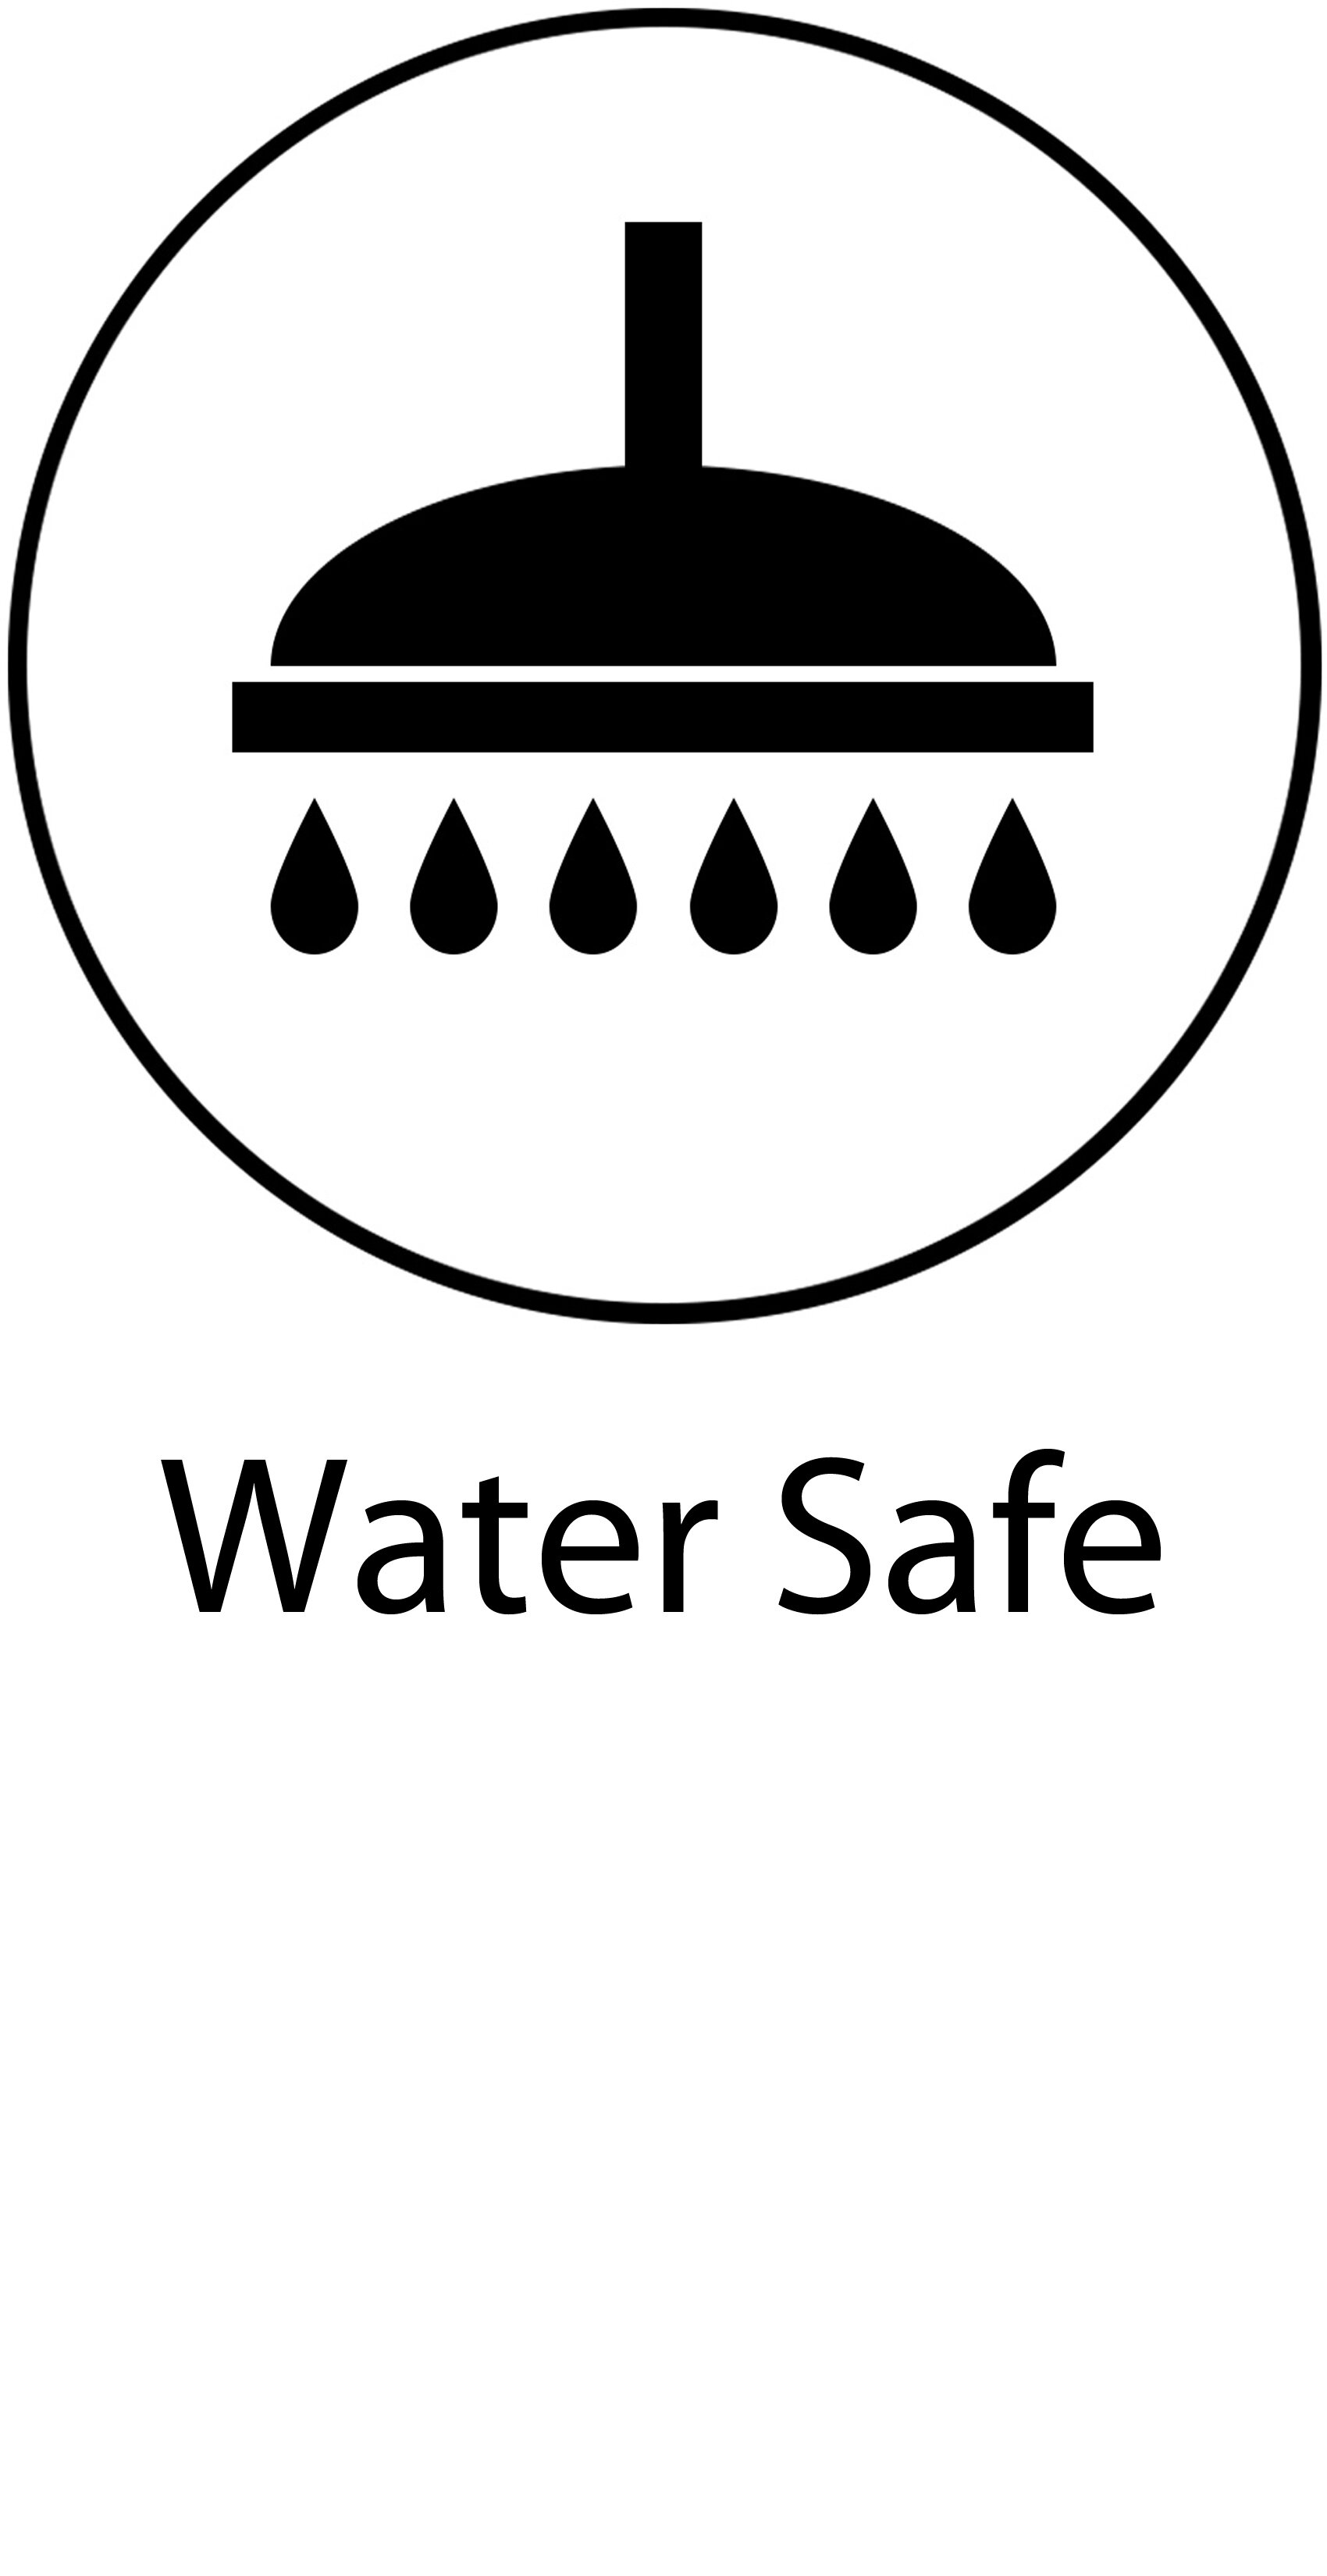 04 Water Safe.jpg